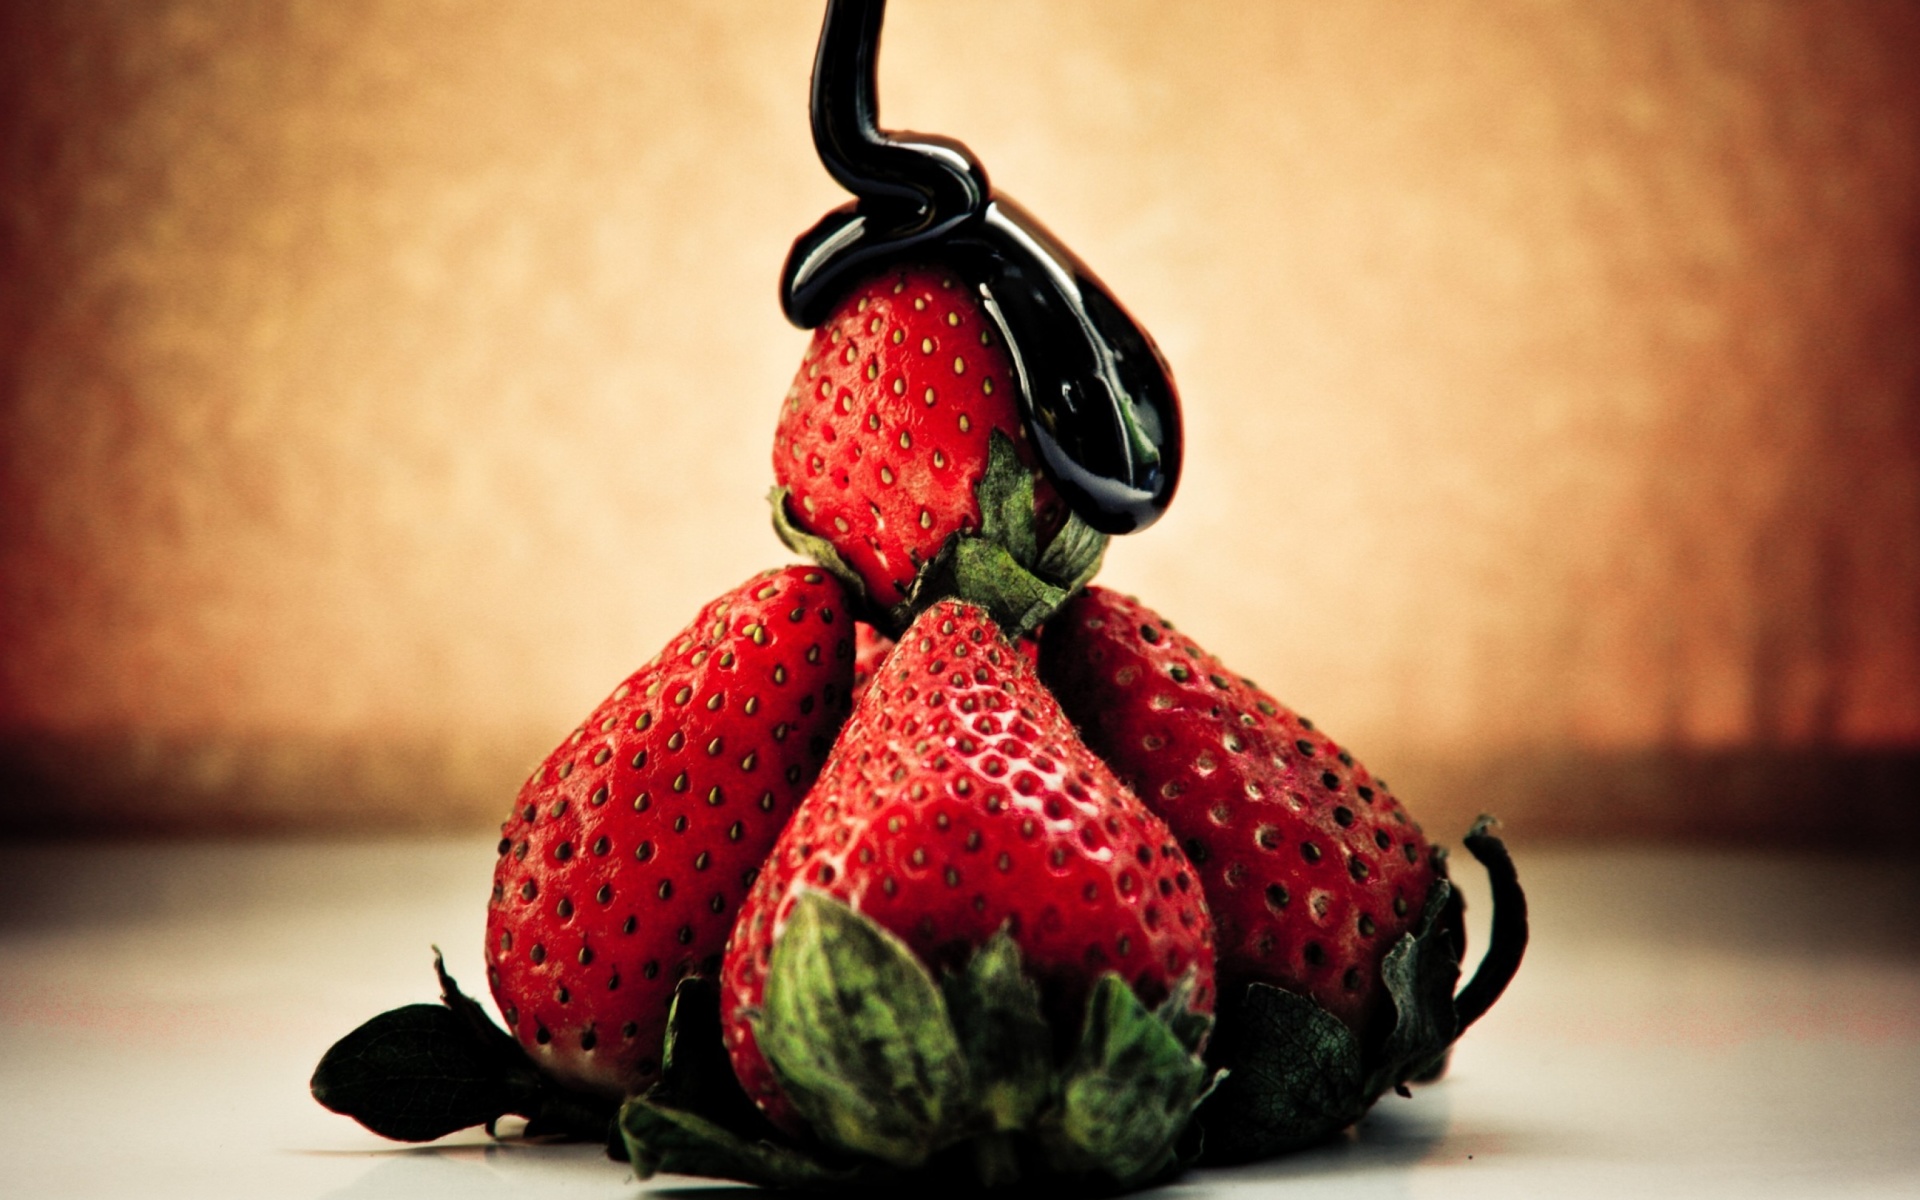 Strawberries with chocolate screenshot #1 1920x1200